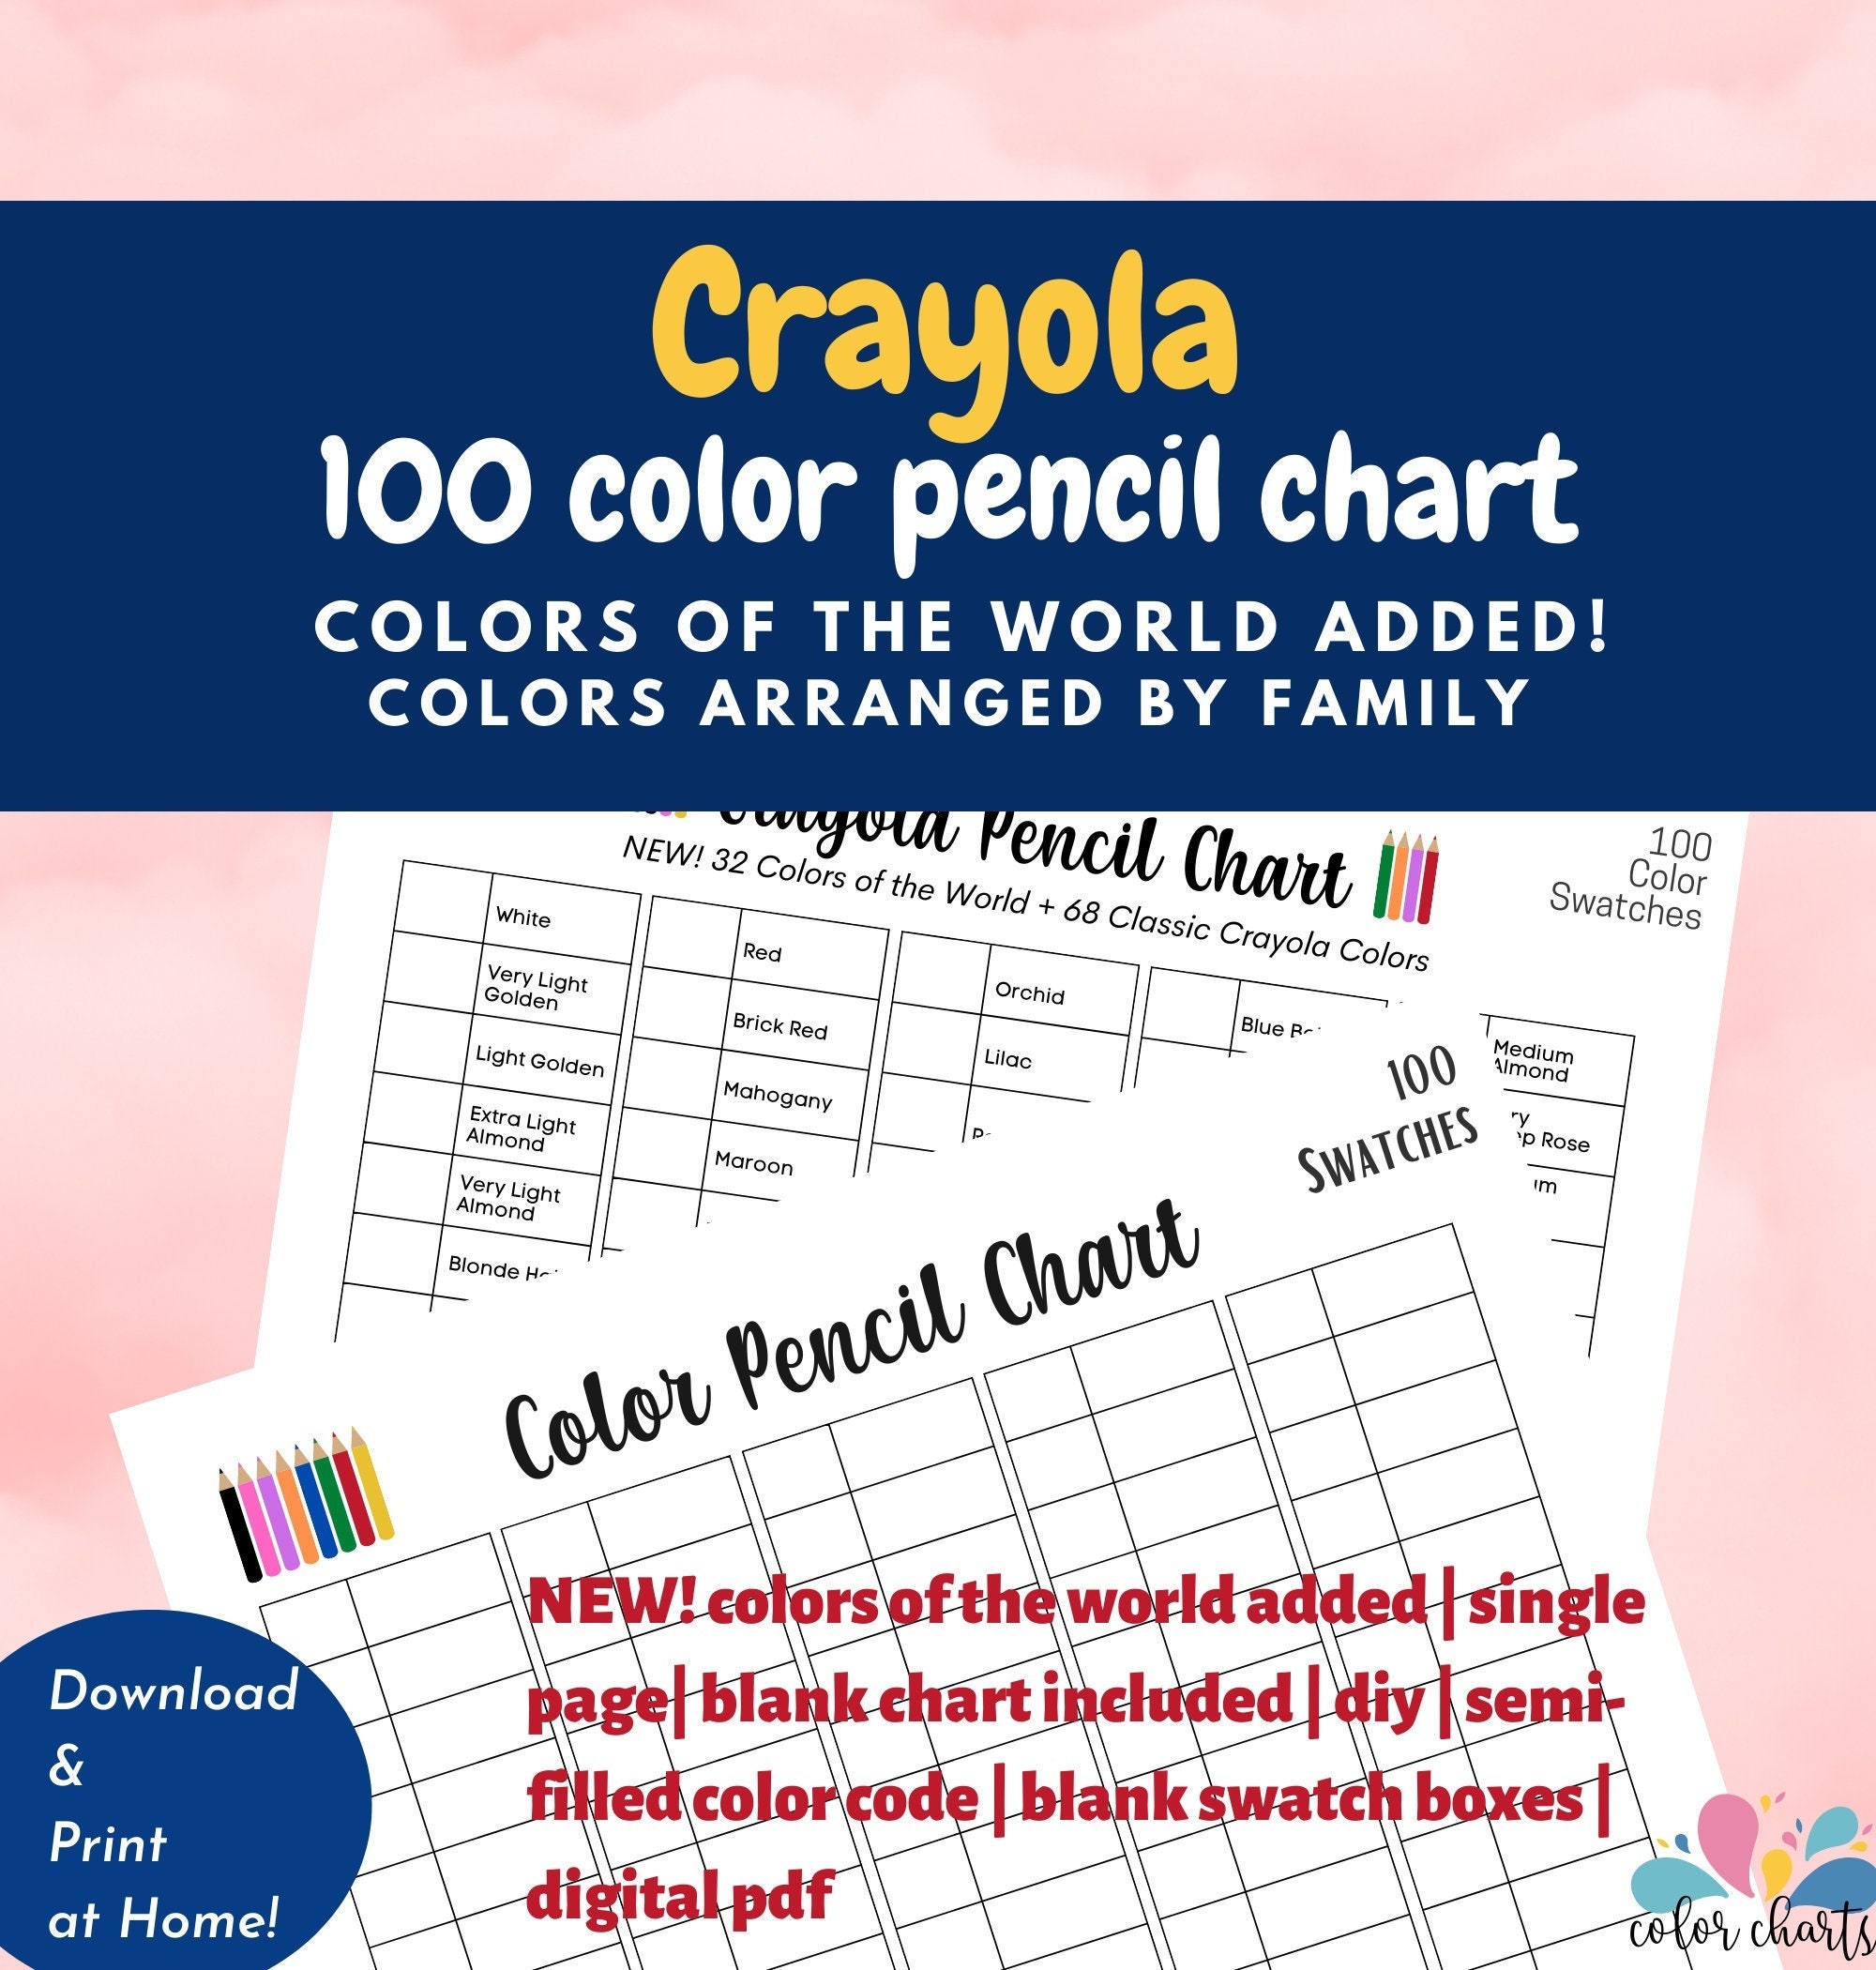 Crayons de cire aux couleurs de la peau Colors of the World de Crayola